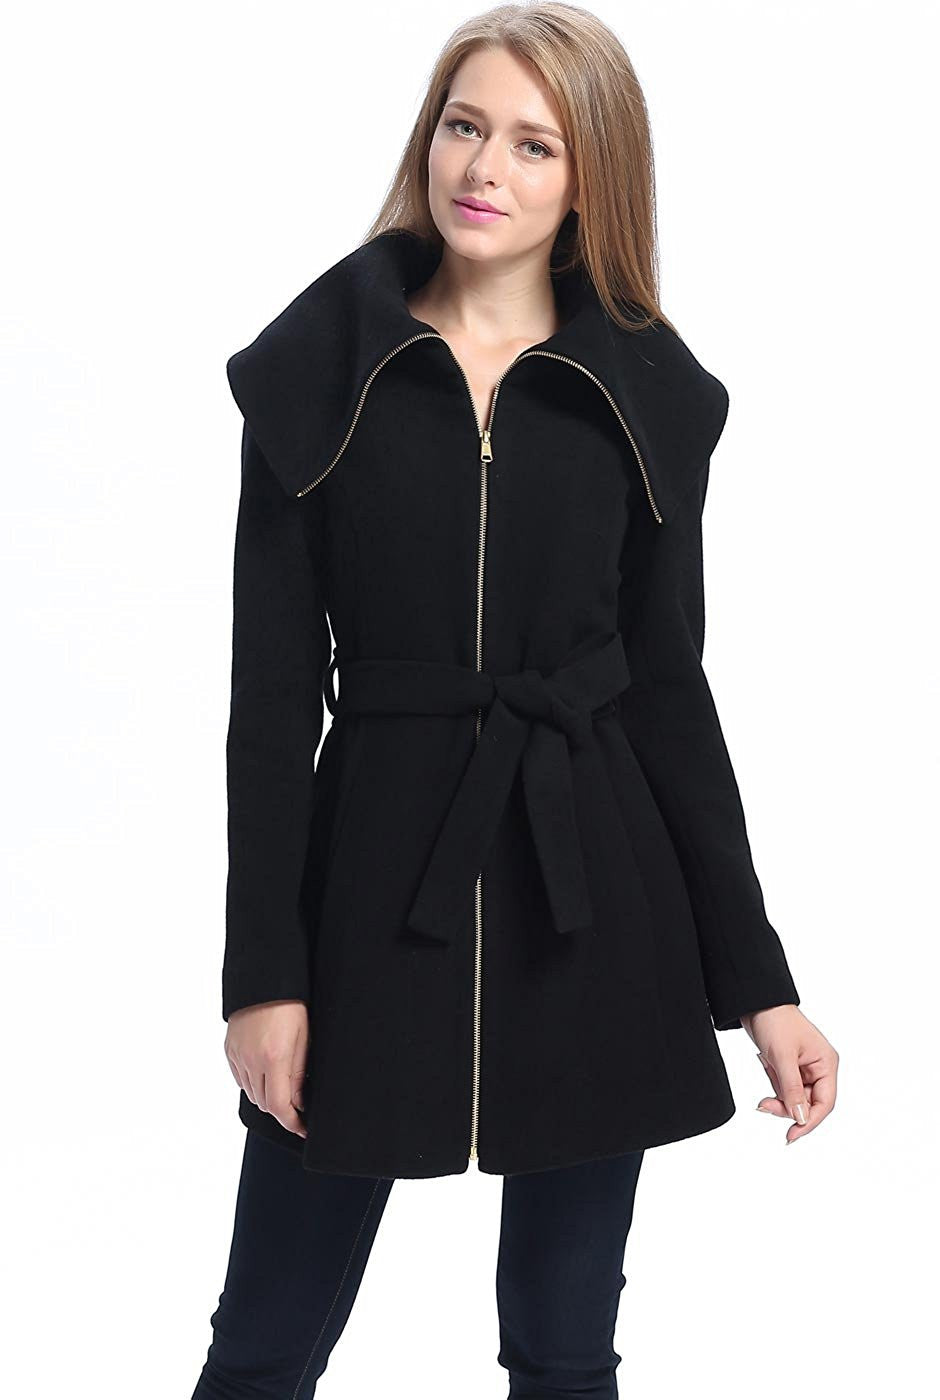 BGSD Women Robin Wool Fold Collar Coat